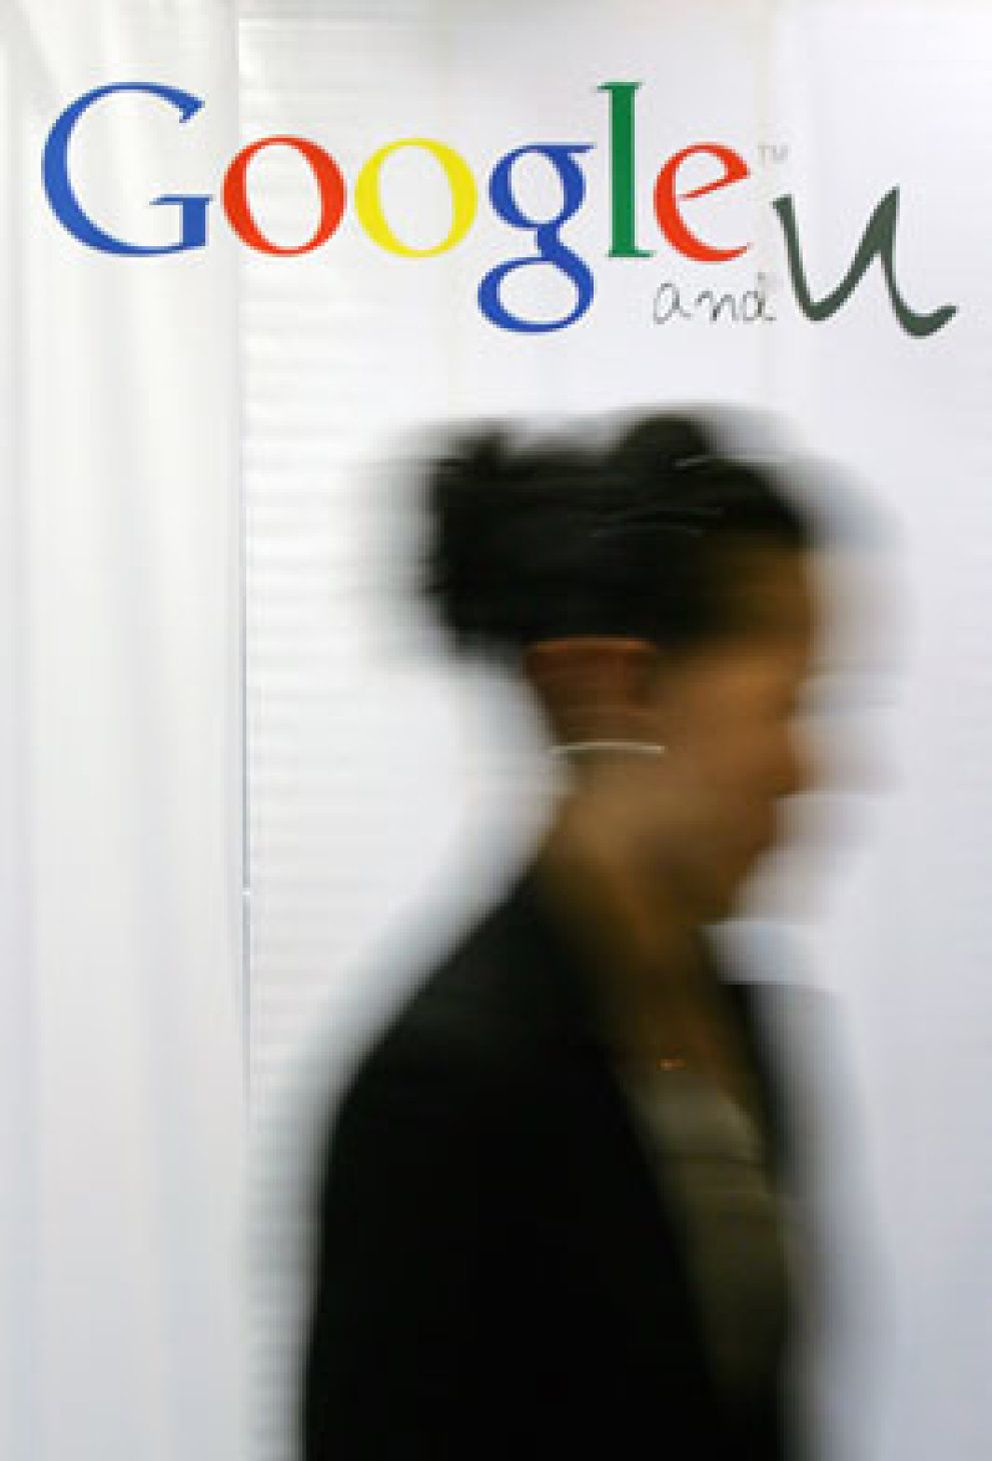 Foto: Google, bloqueado en China tras ser acusado de pornográfico por el Gobierno